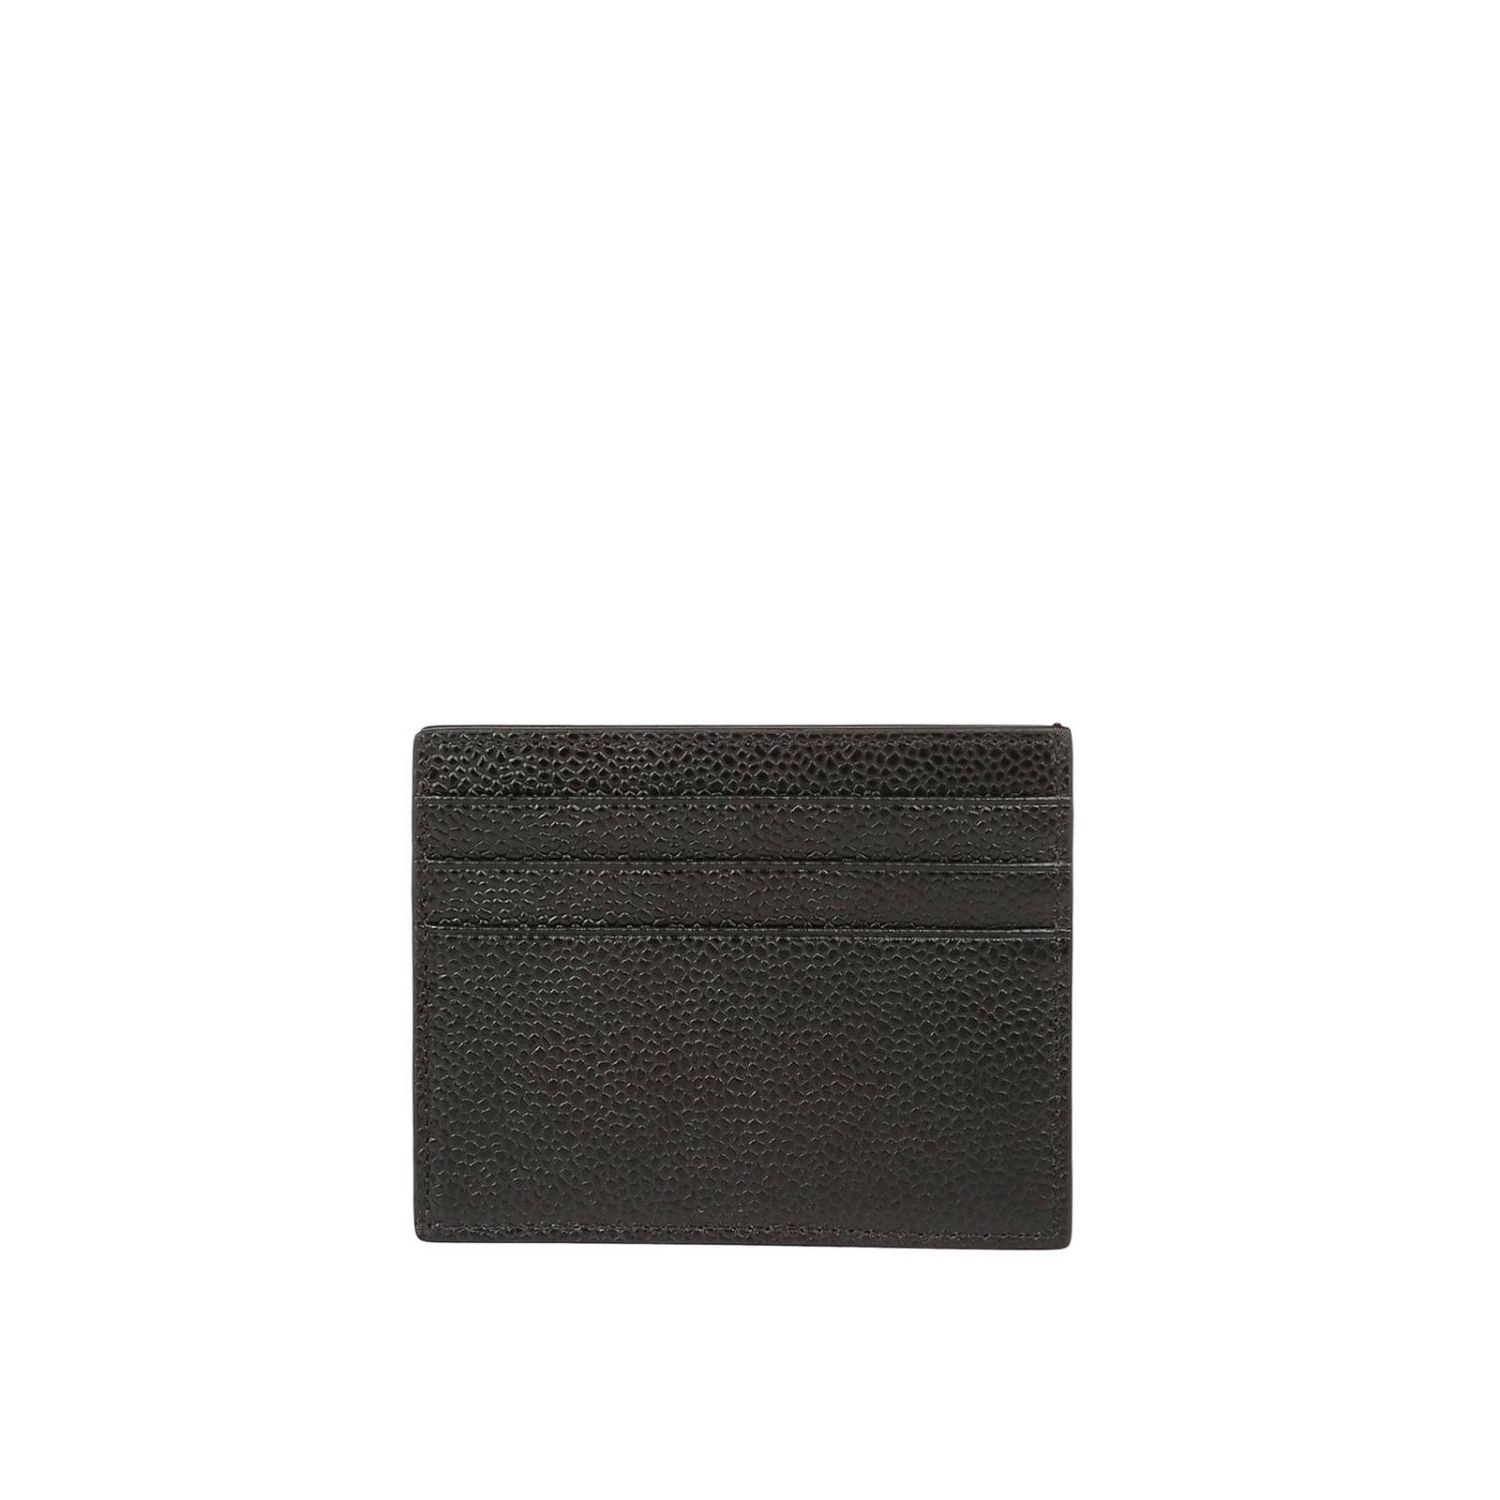 Thom Browne Outlet: Wallet men | Wallet Thom Browne Men Black | Wallet ...